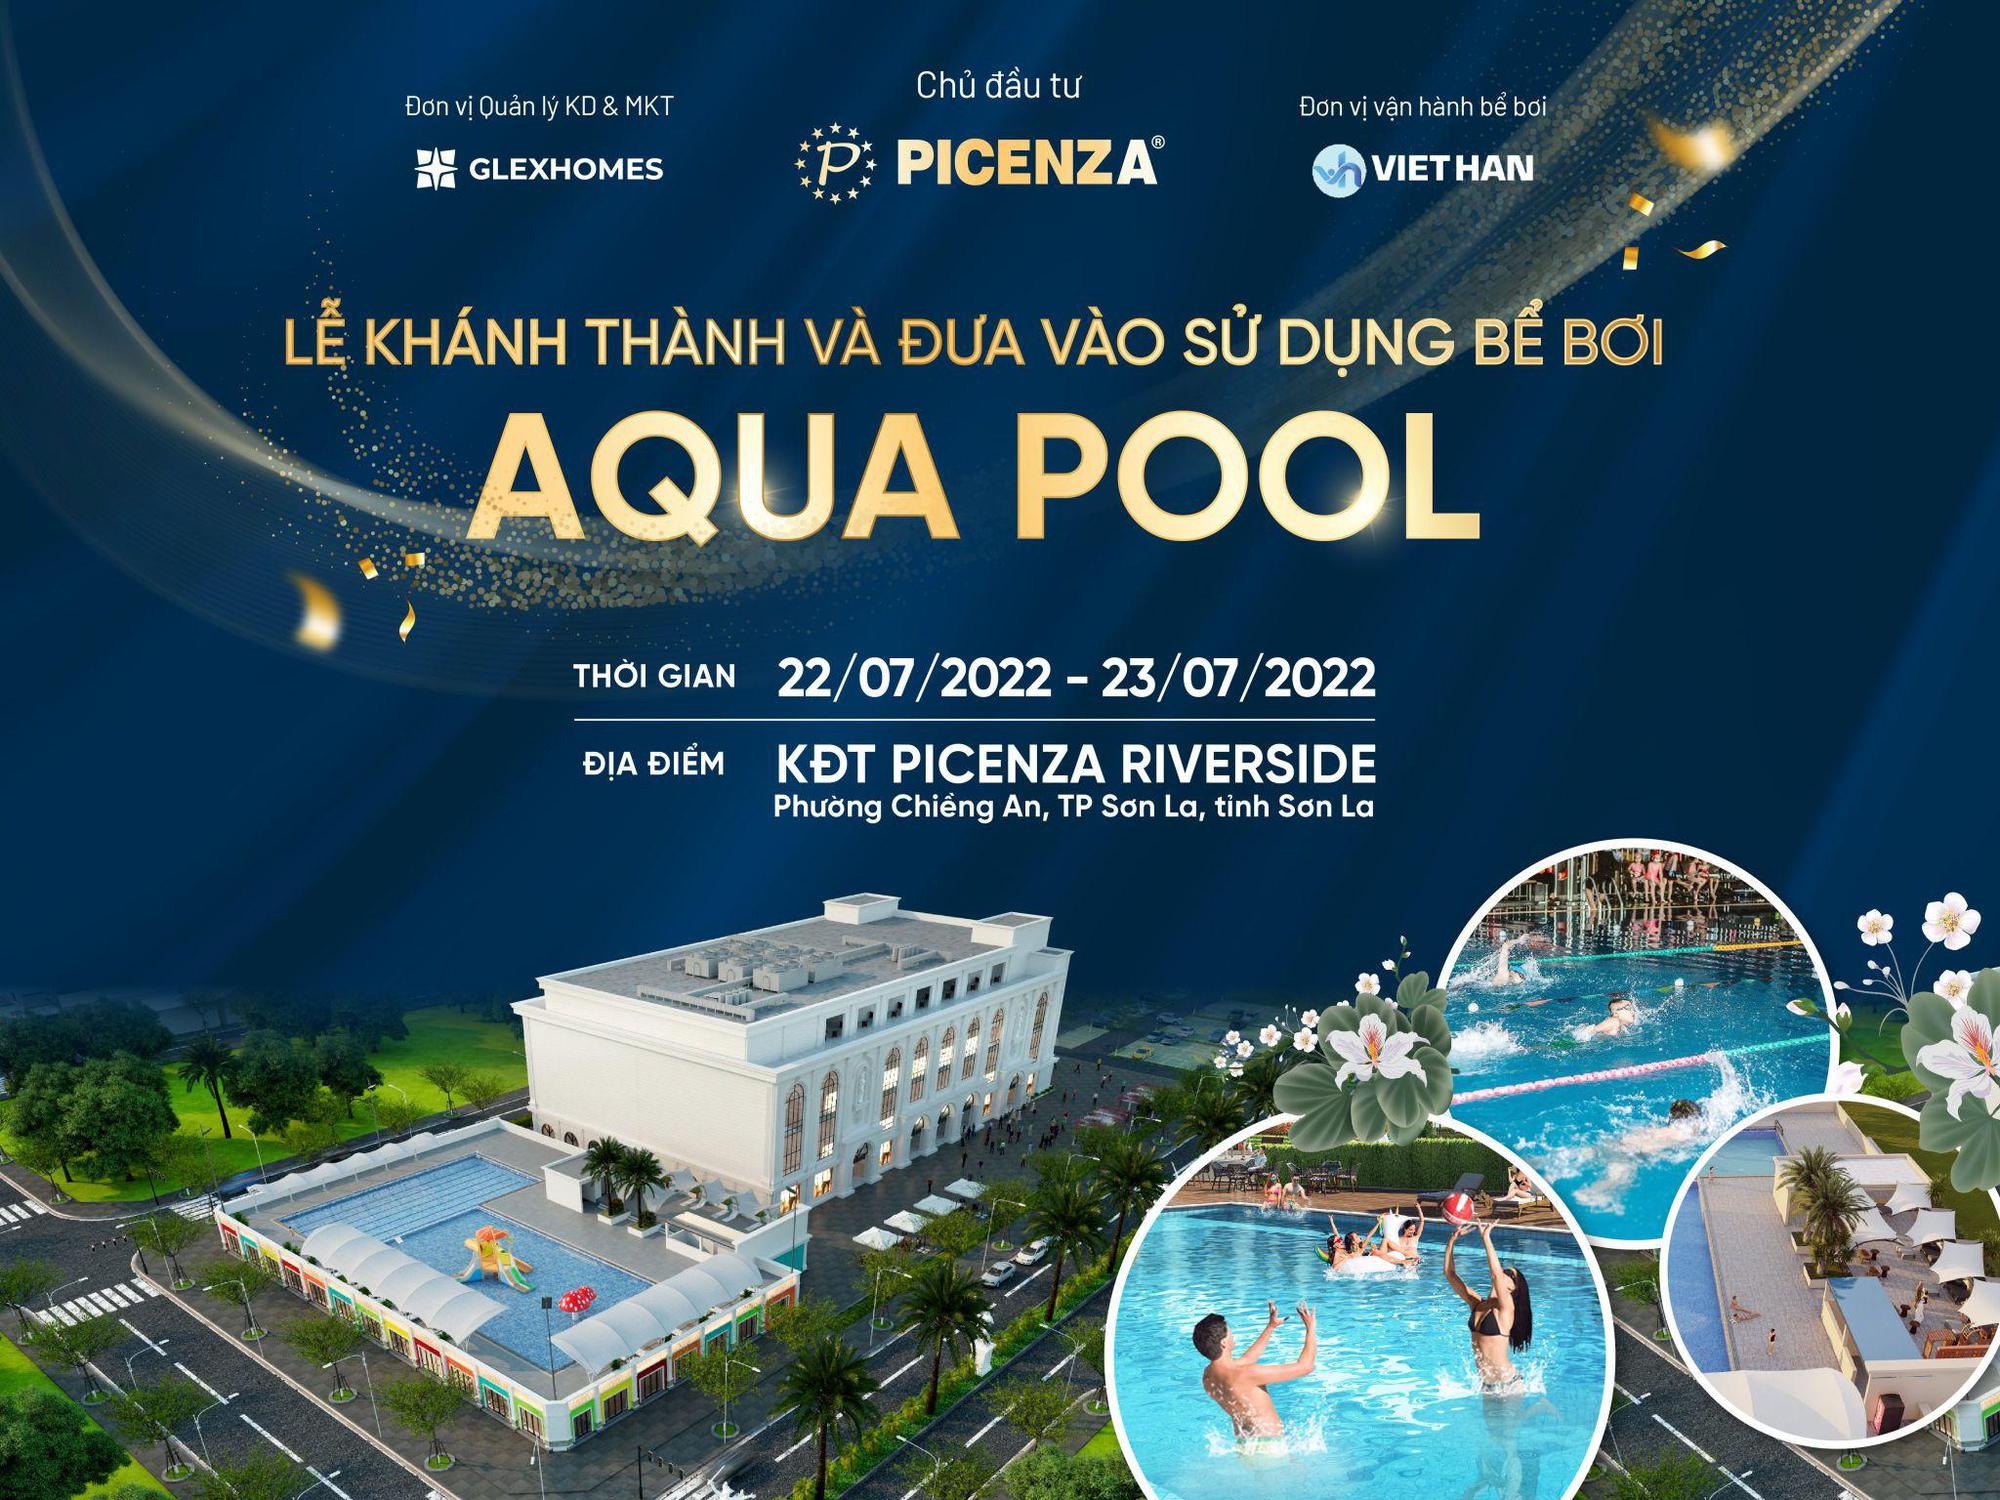 Picenza Riverside khánh thành bể bơi Aqua Pool đẳng cấp bậc nhất Sơn La với loạt sự kiện sôi động trong 2 ngày 22 và 23/7/2022 - Ảnh 1.